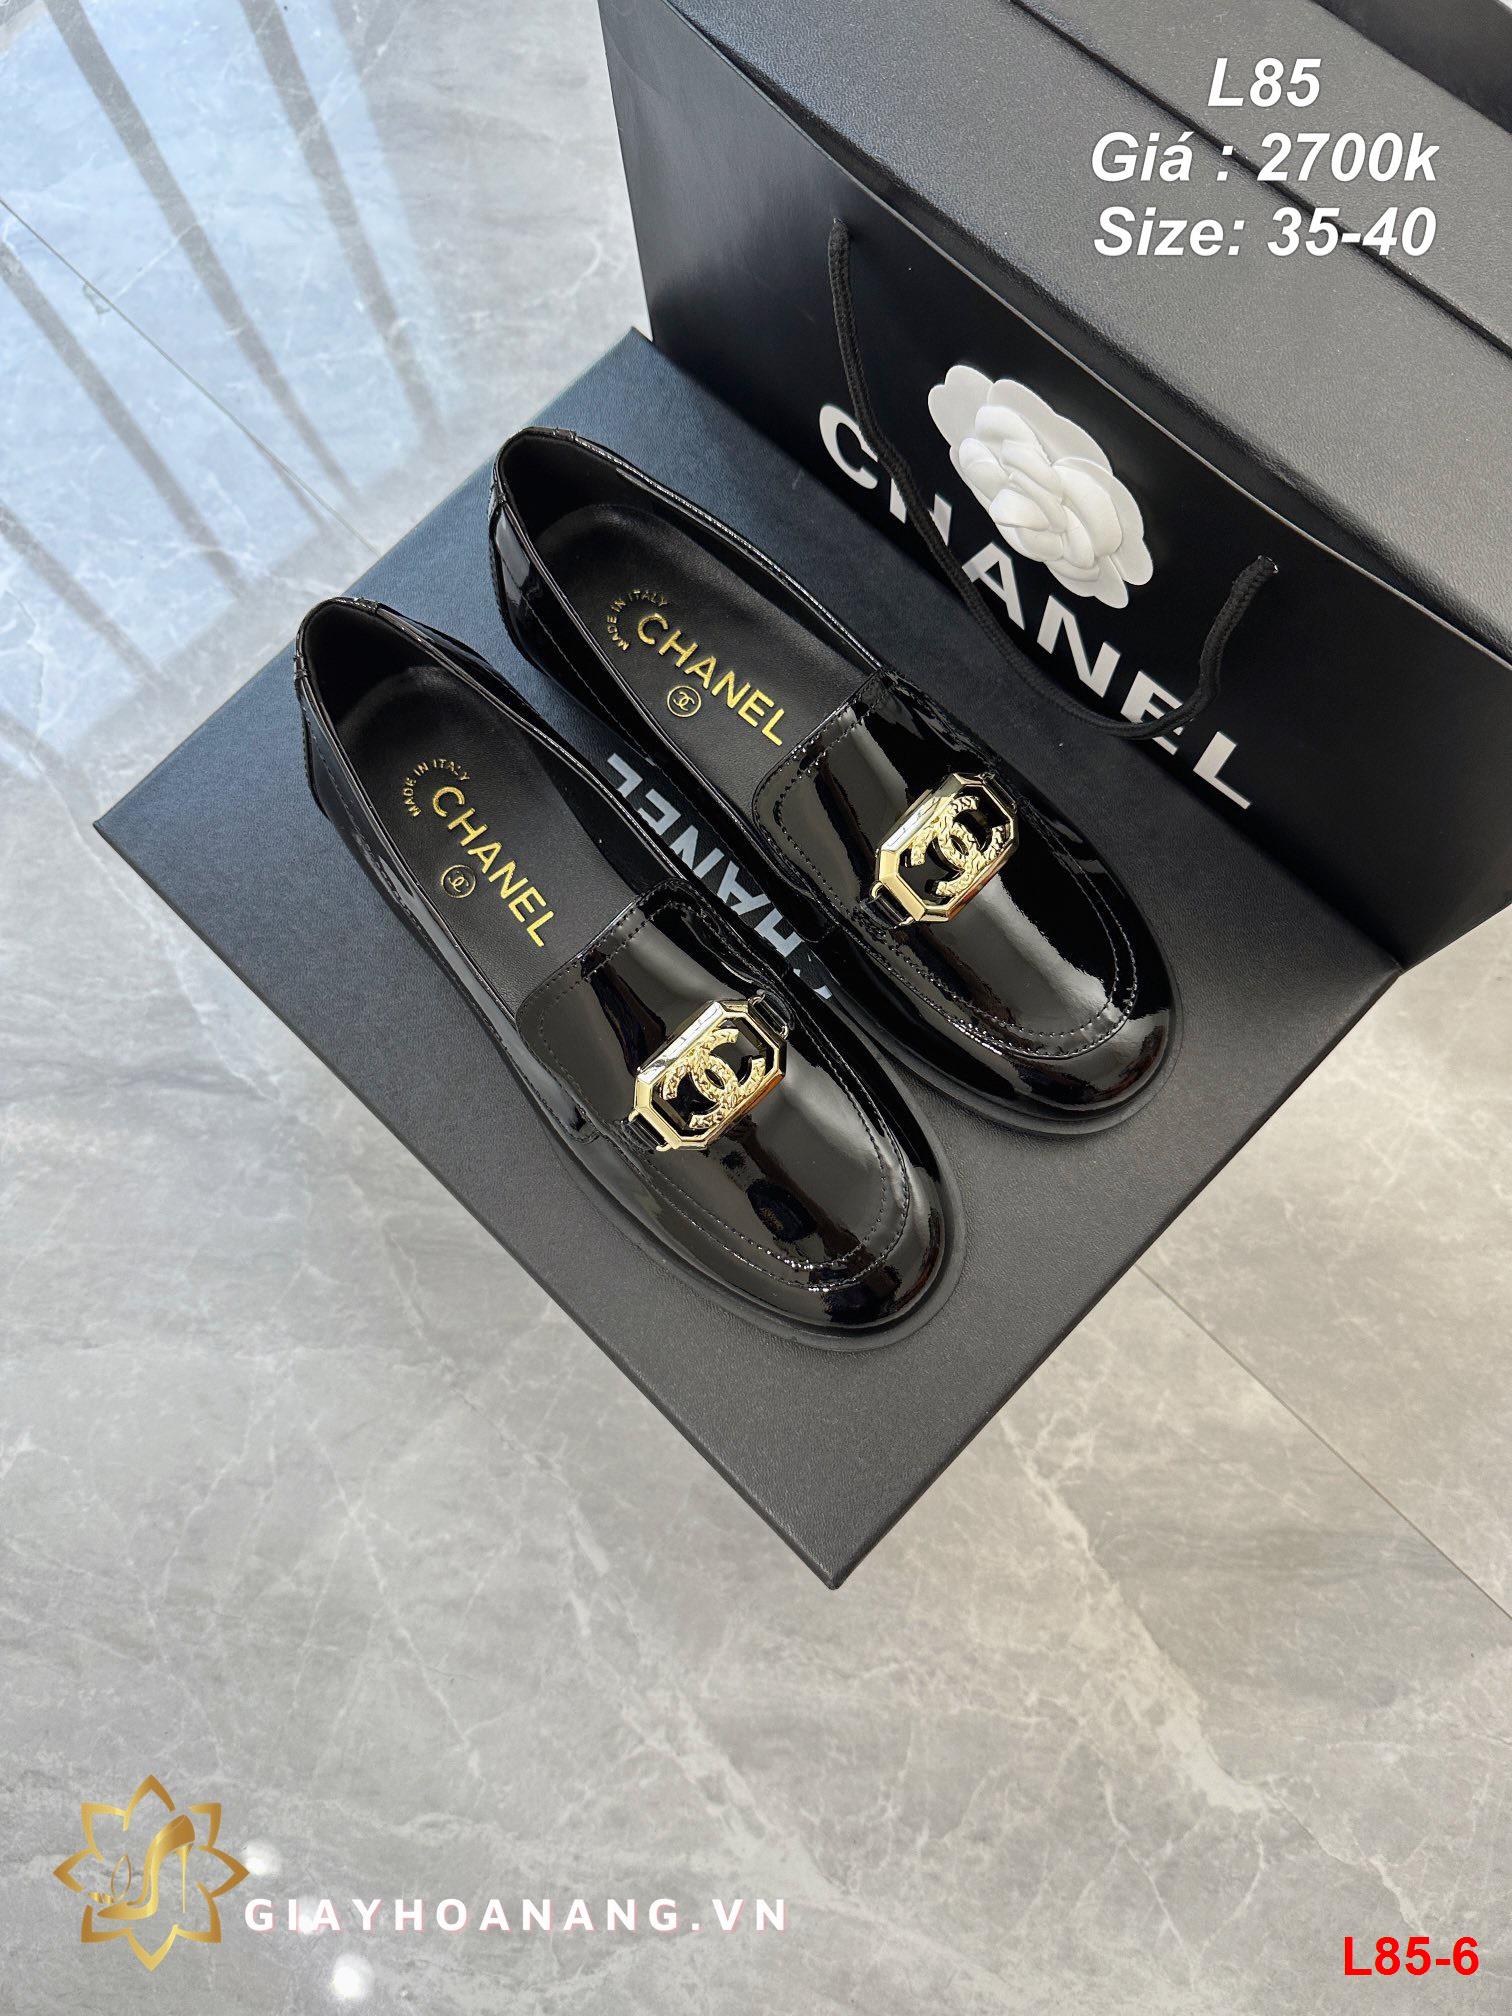 L85-6 Chanel giày lười siêu cấp